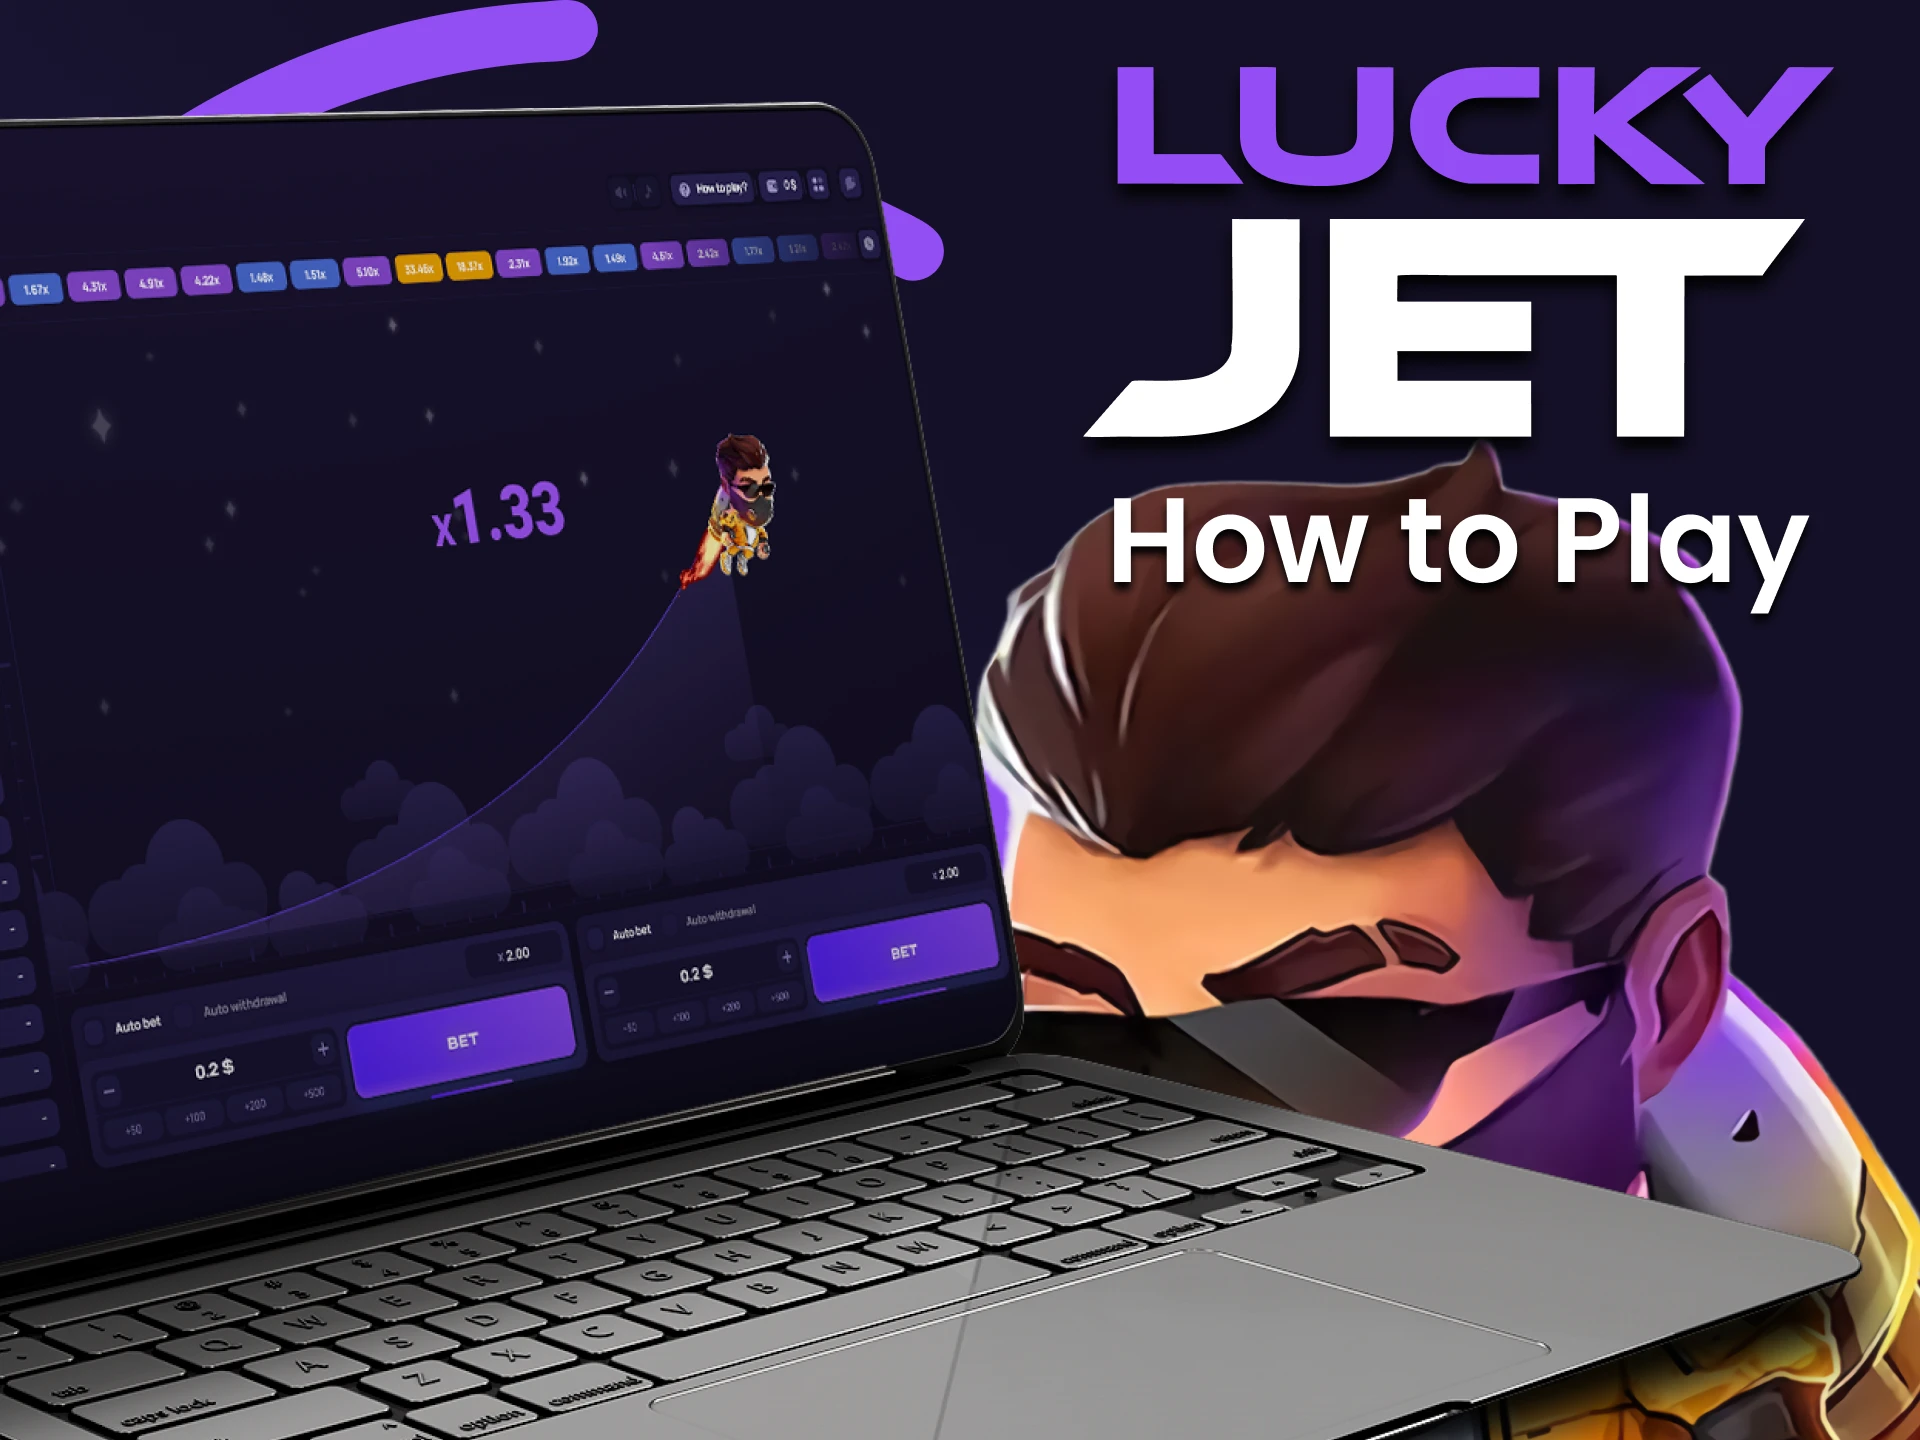 Regístrese y siga jugando a Lucky Jet y, por supuesto, gane.